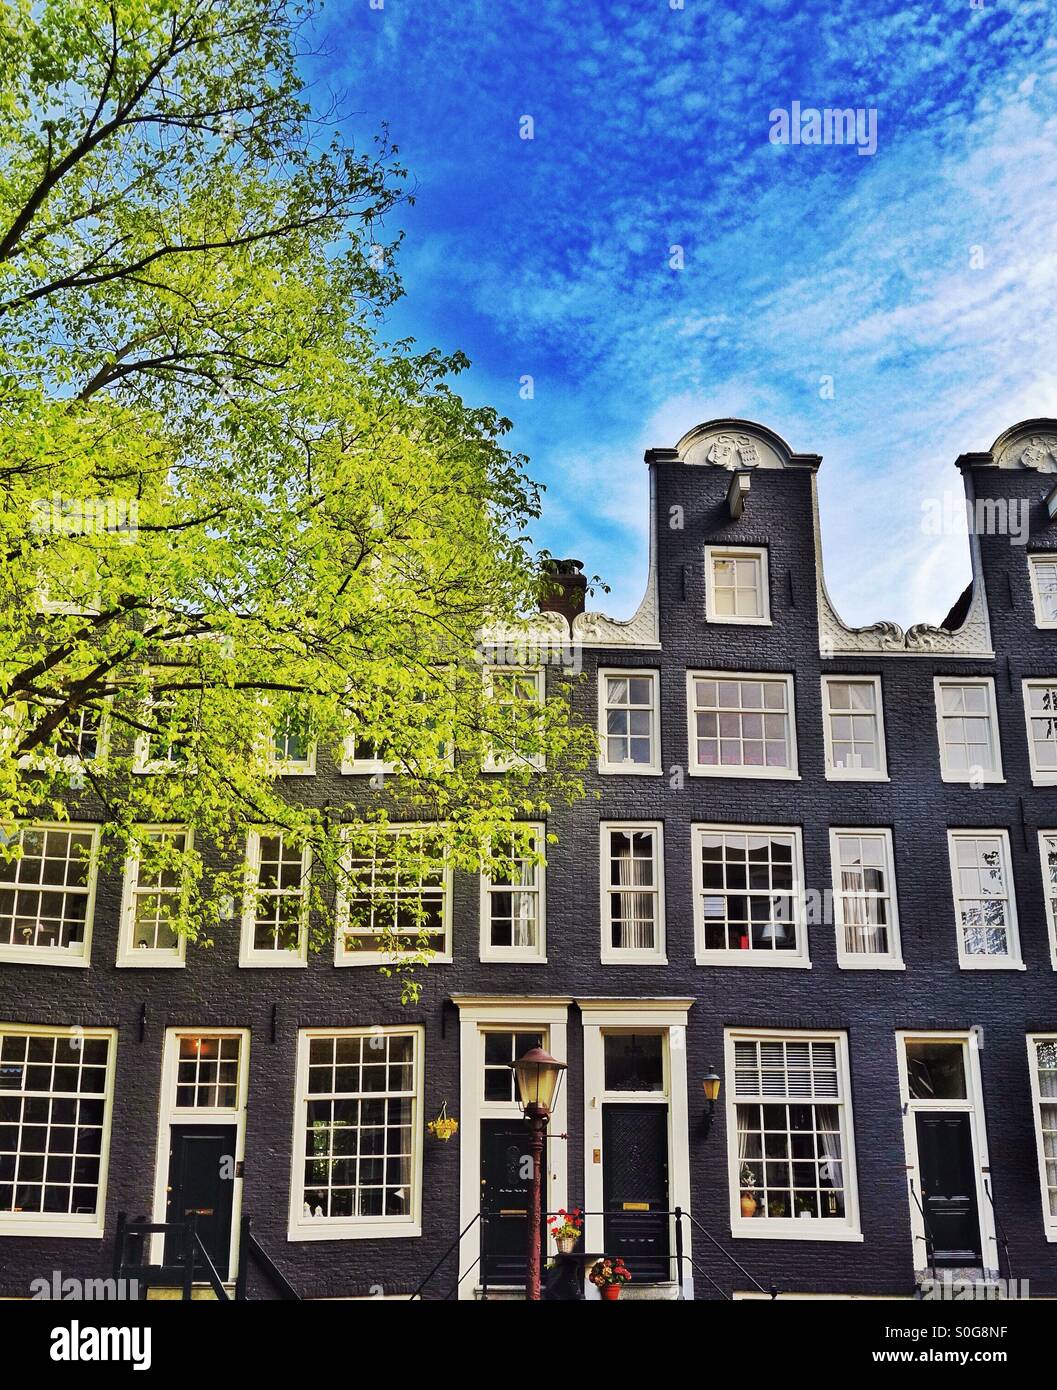 Typischen hohen, schmalen Seite Grachtenhäuser in Amsterdam Niederlande EU Stockfoto